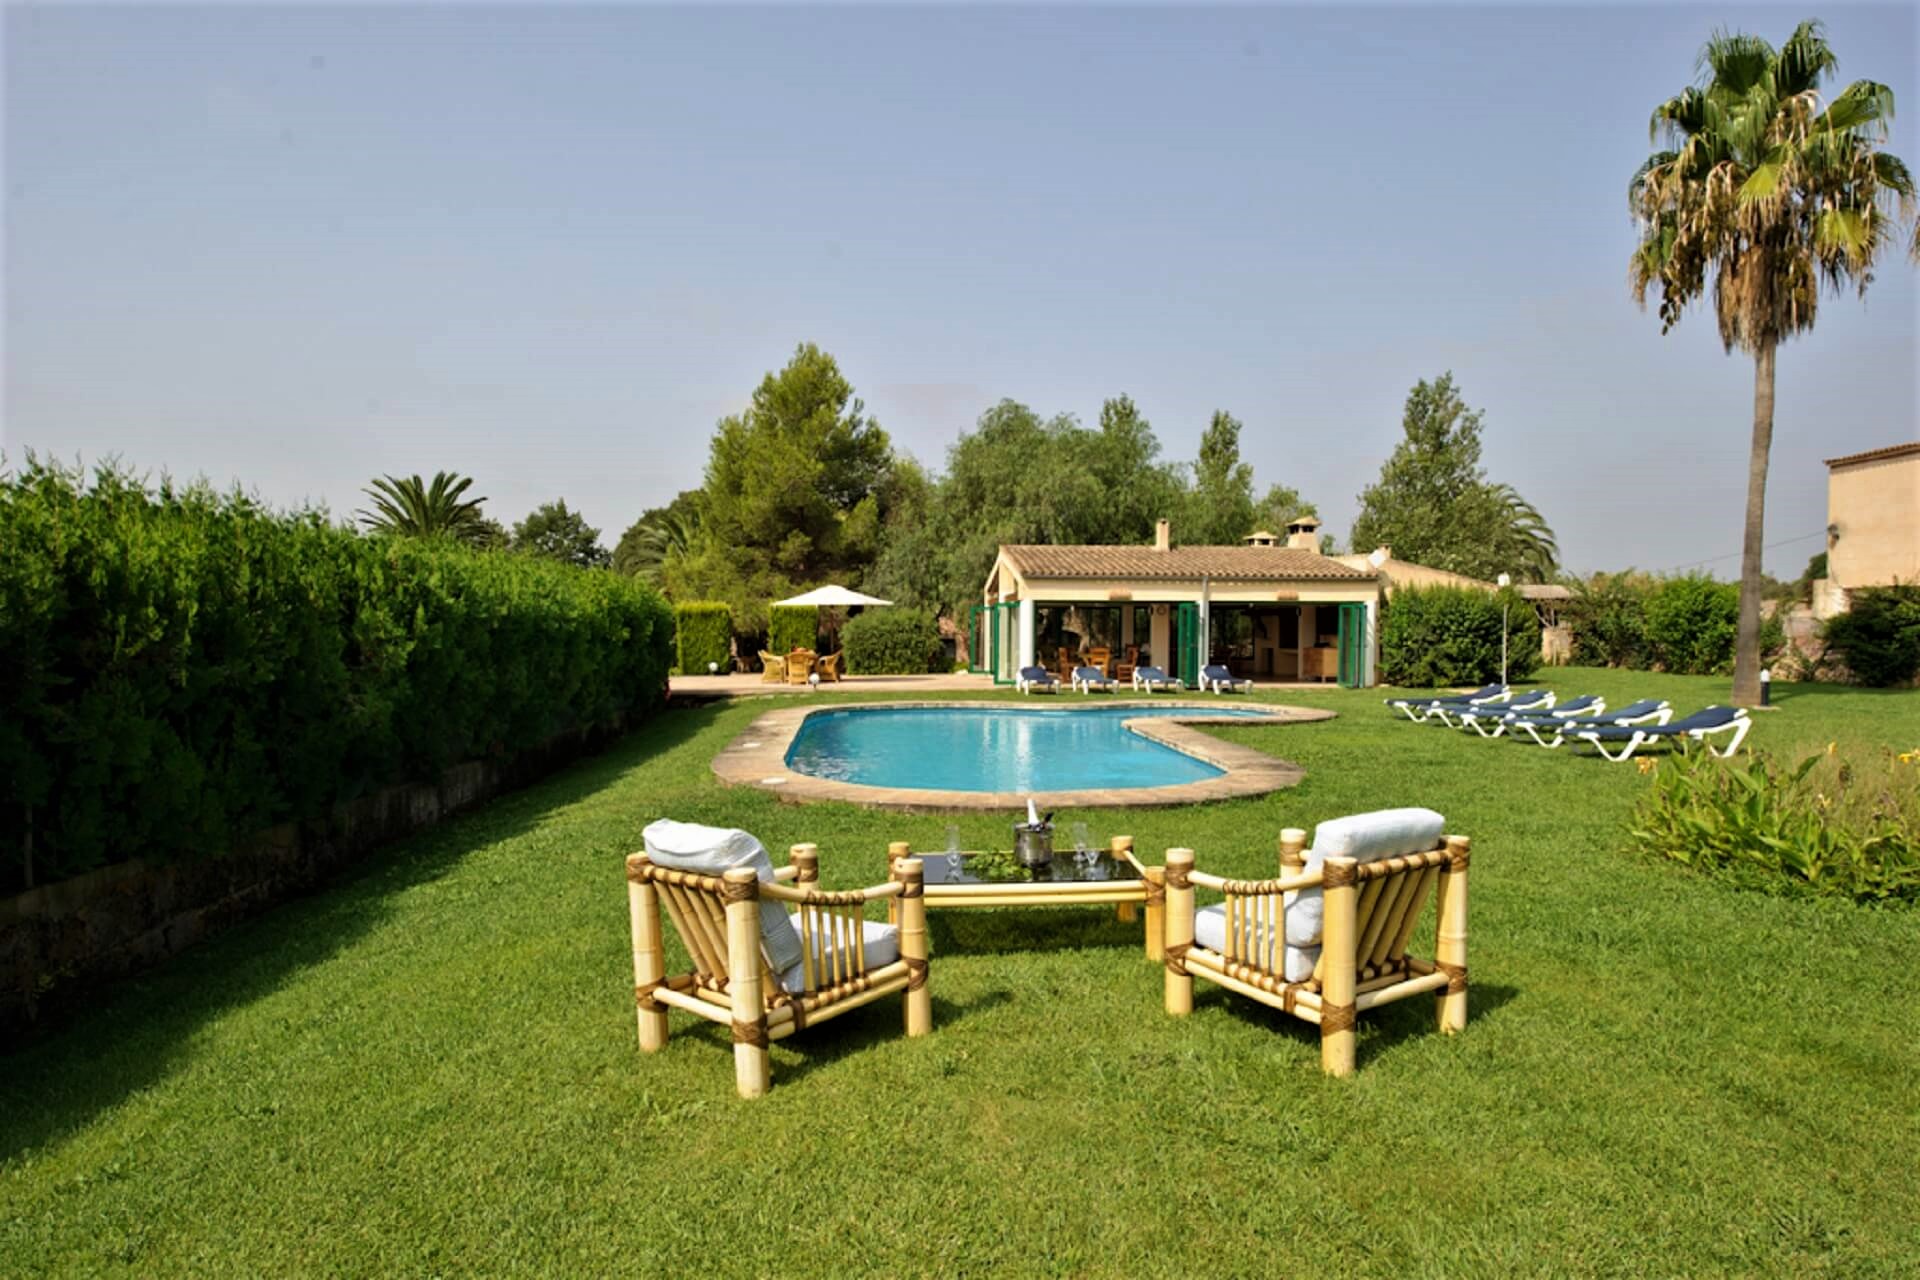 Finca Son Rito - Pool and garden area